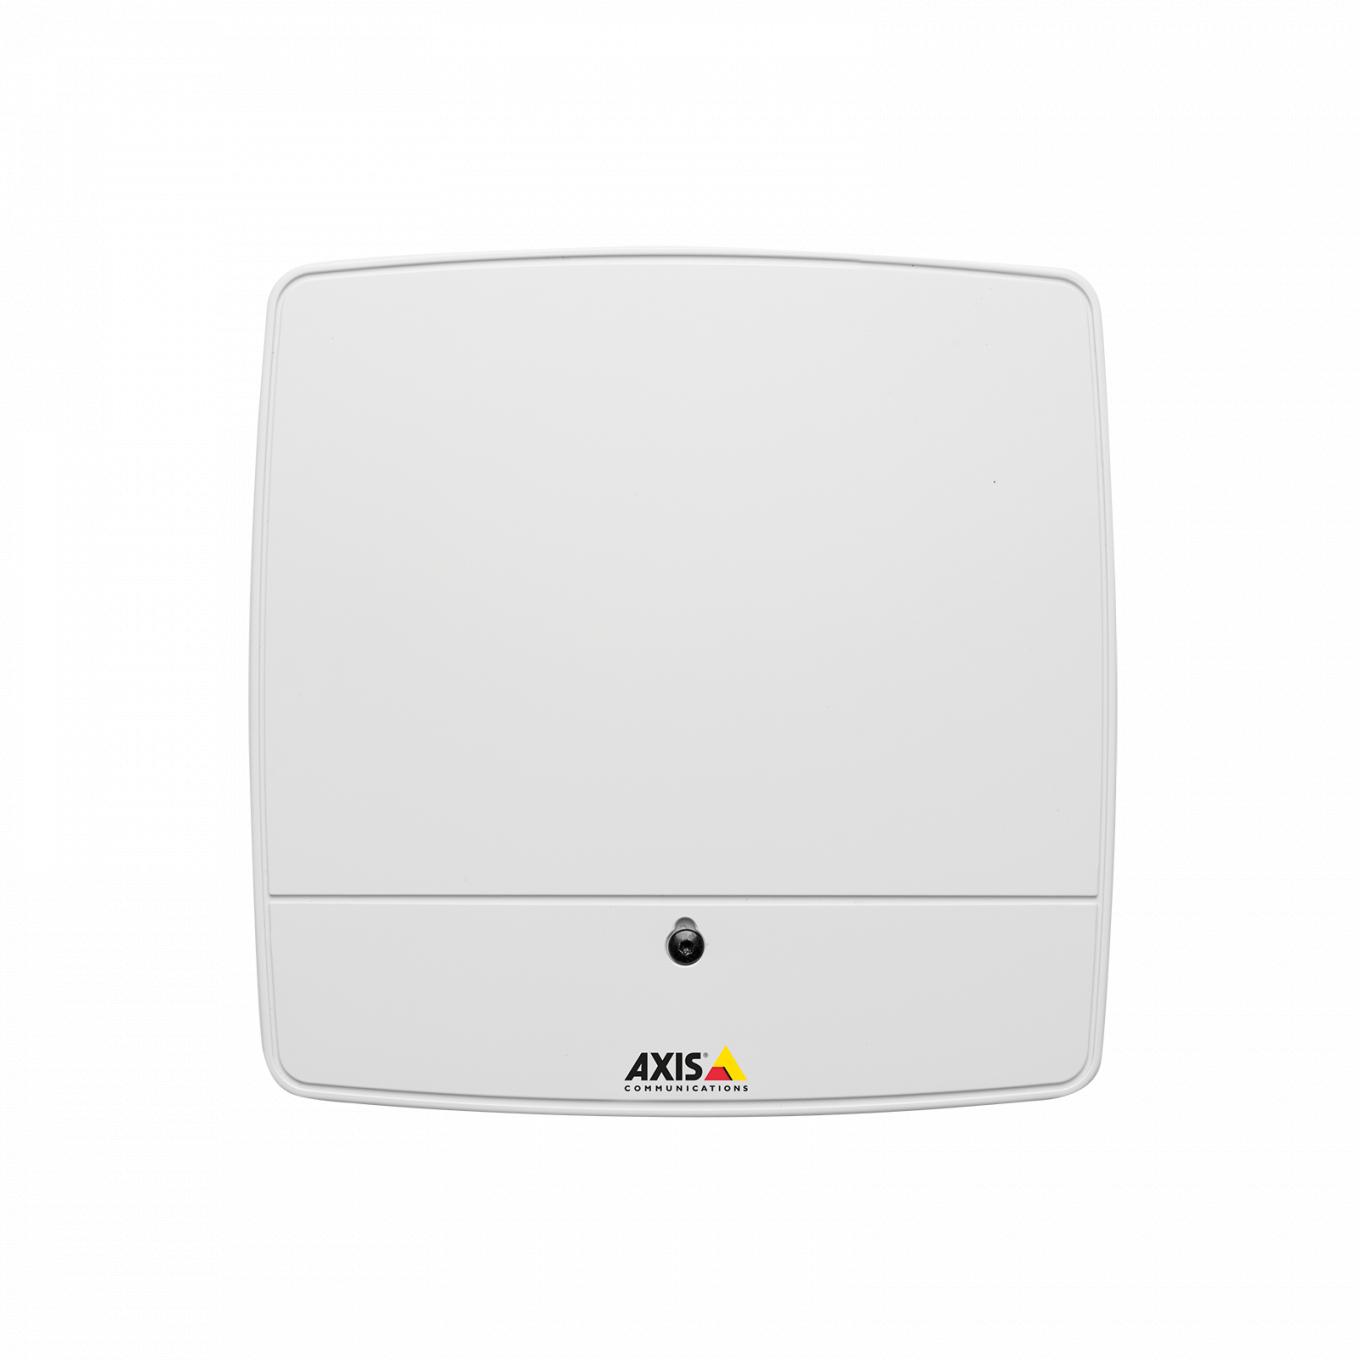 AXIS A1001 Network Door Controller, vue de face